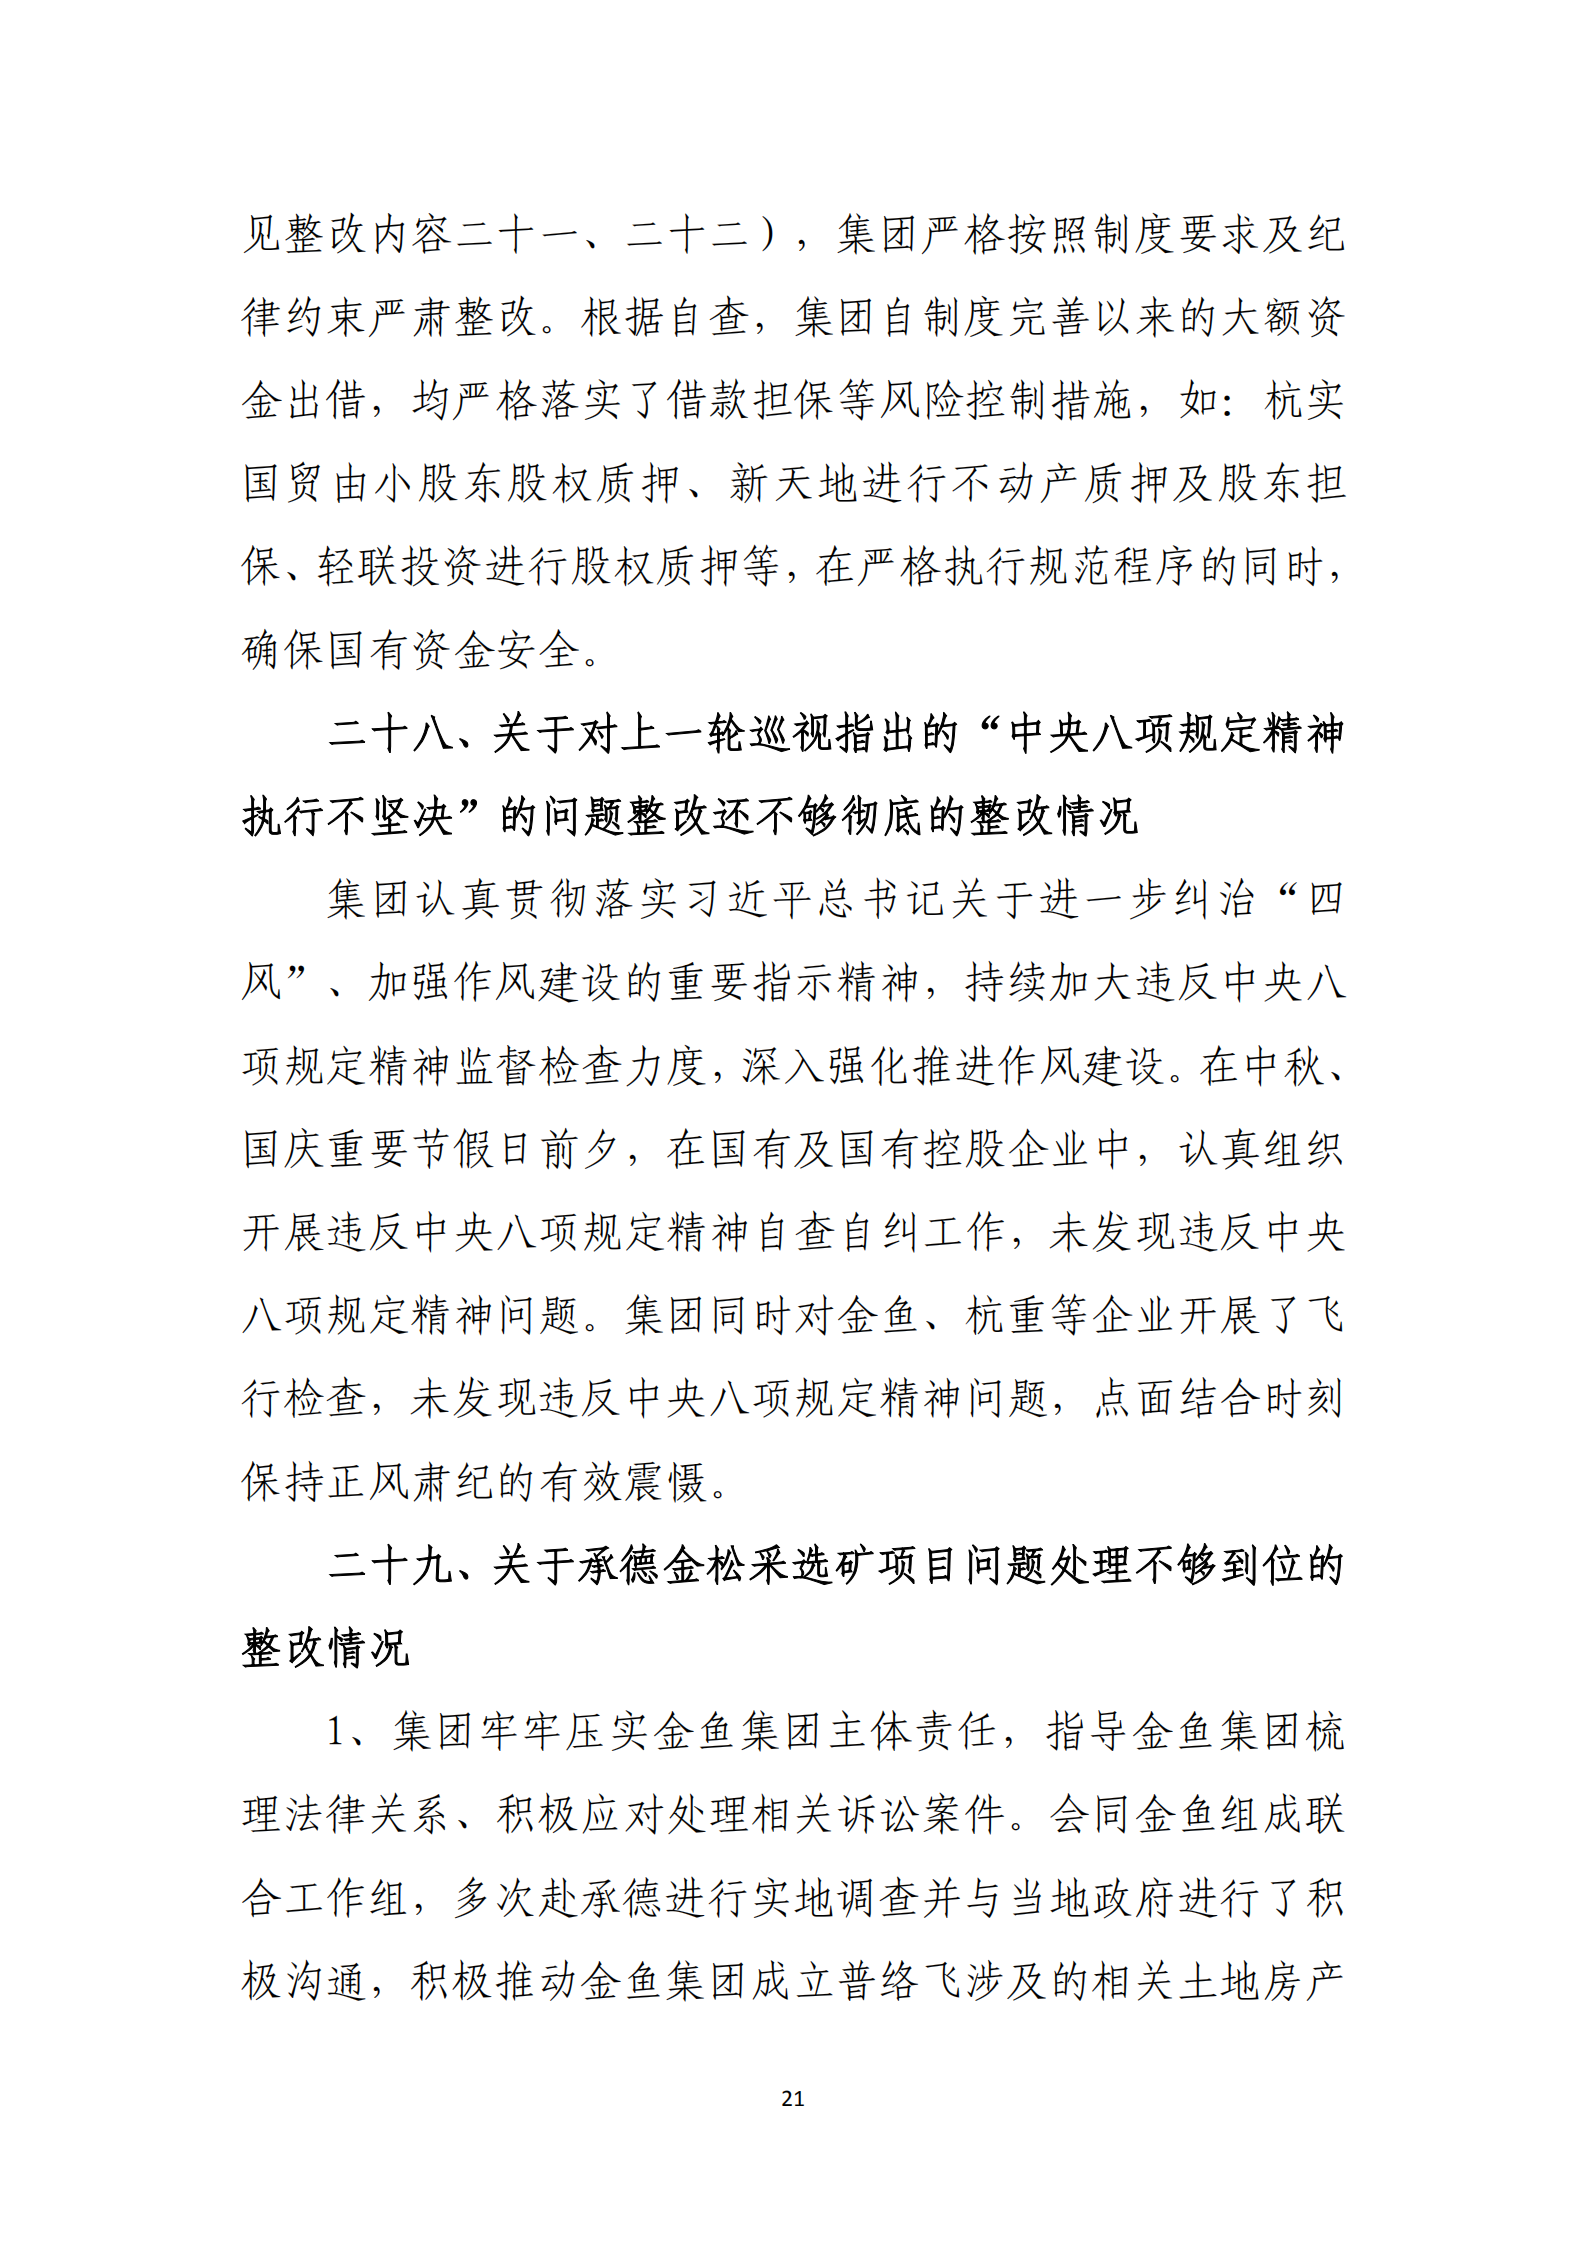 【体育365官方网站】中国有限公司党委关于巡察整改情况的通报_20.png